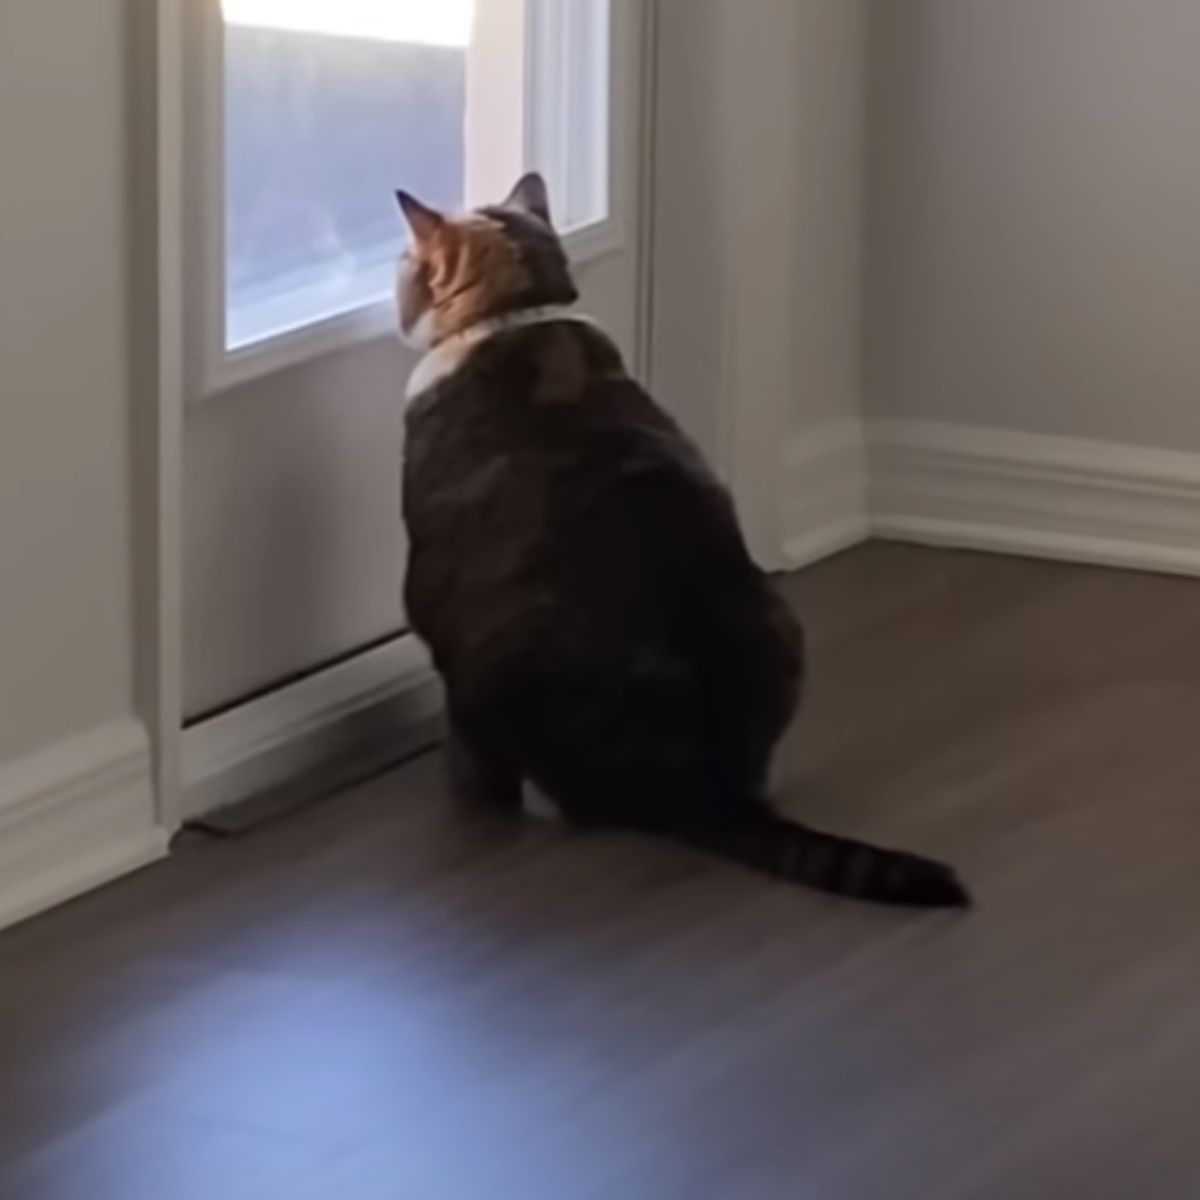 fat cat looking through the door window